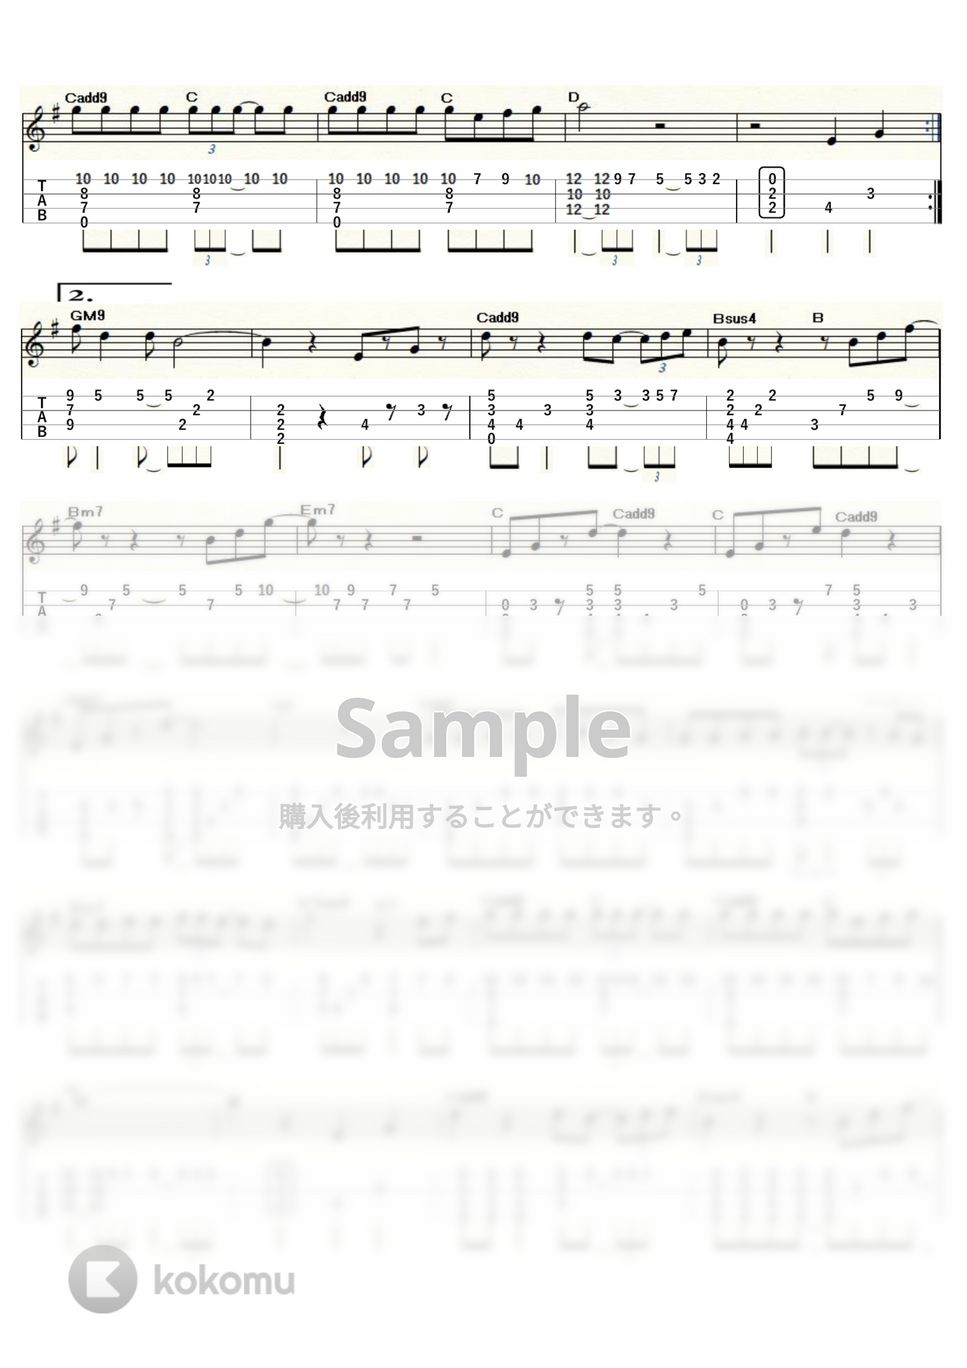 カーペンターズ - 遙かなる影～CLOSE TO YOU～ (ｳｸﾚﾚｿﾛ / High-G・Low-G / 中級～上級) by ukulelepapa